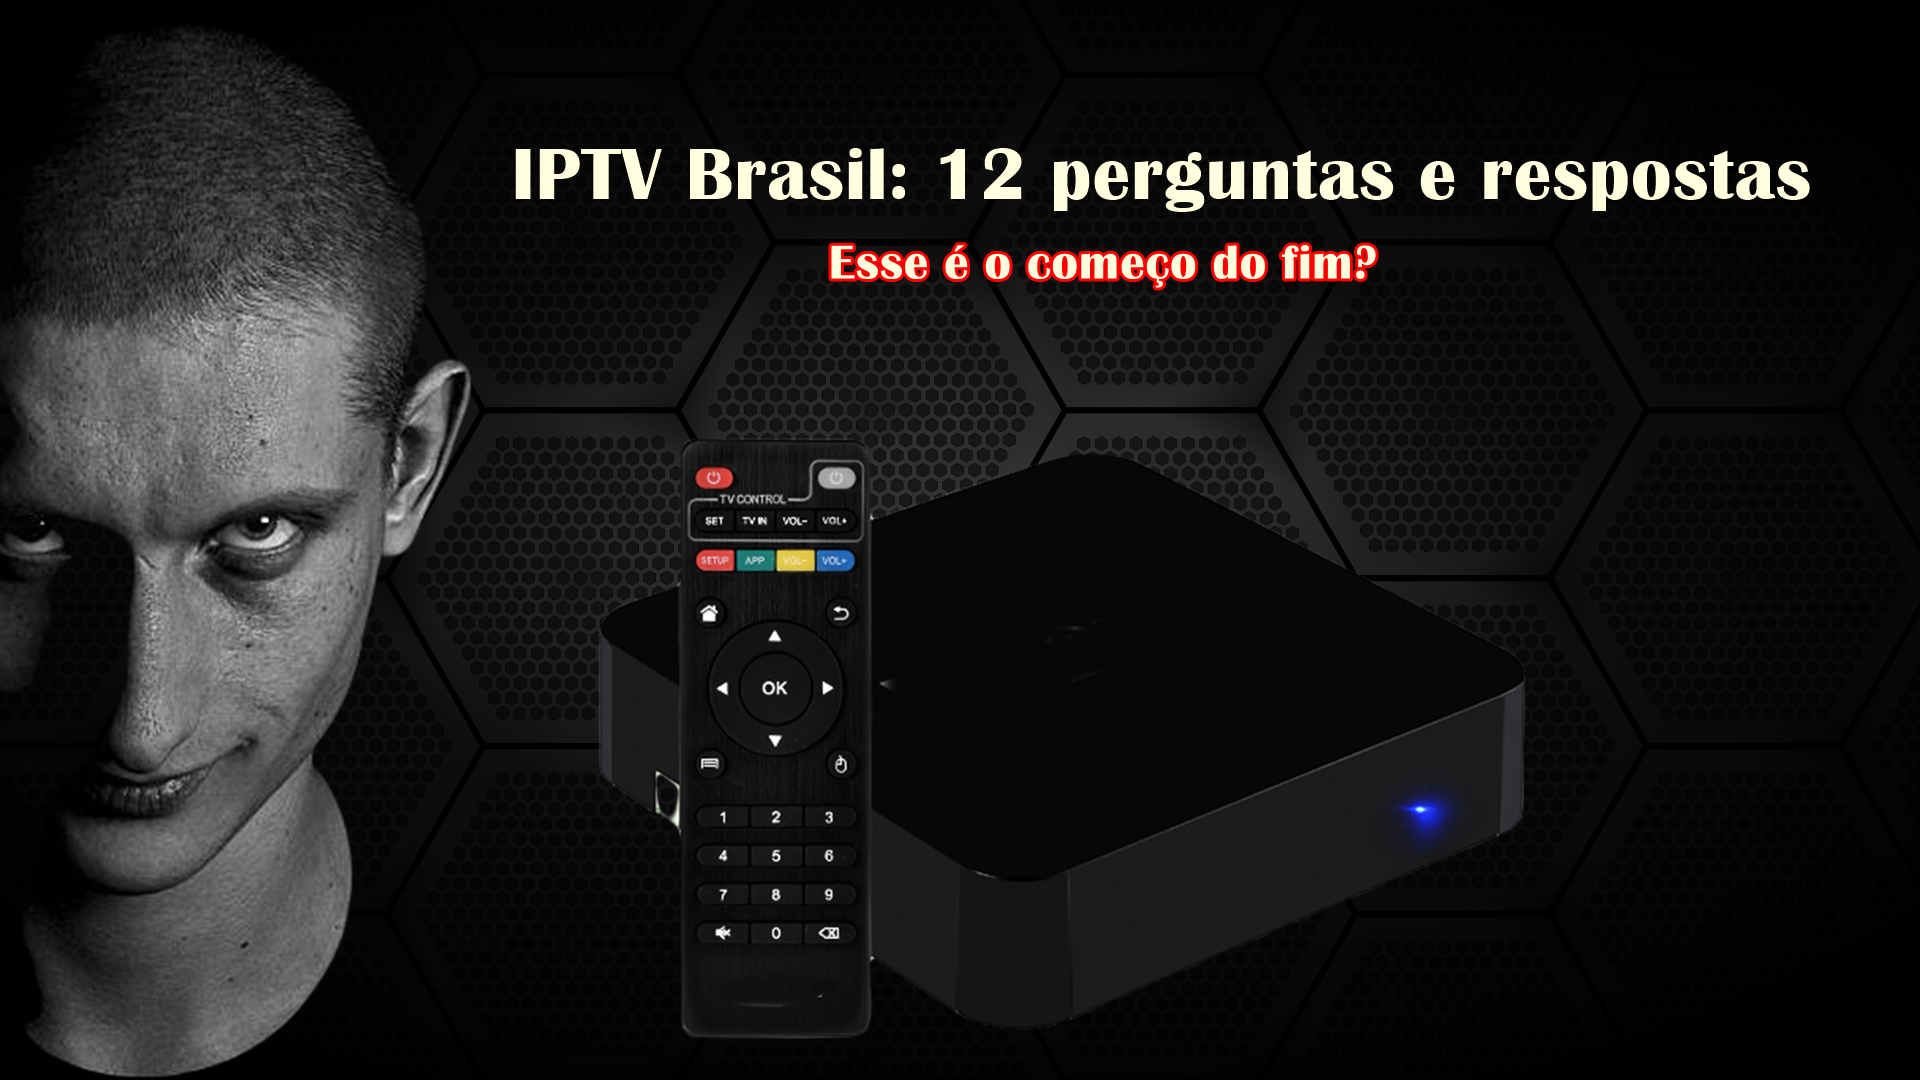 Melhores serviços de IPTV grátis e pagos no Brasil